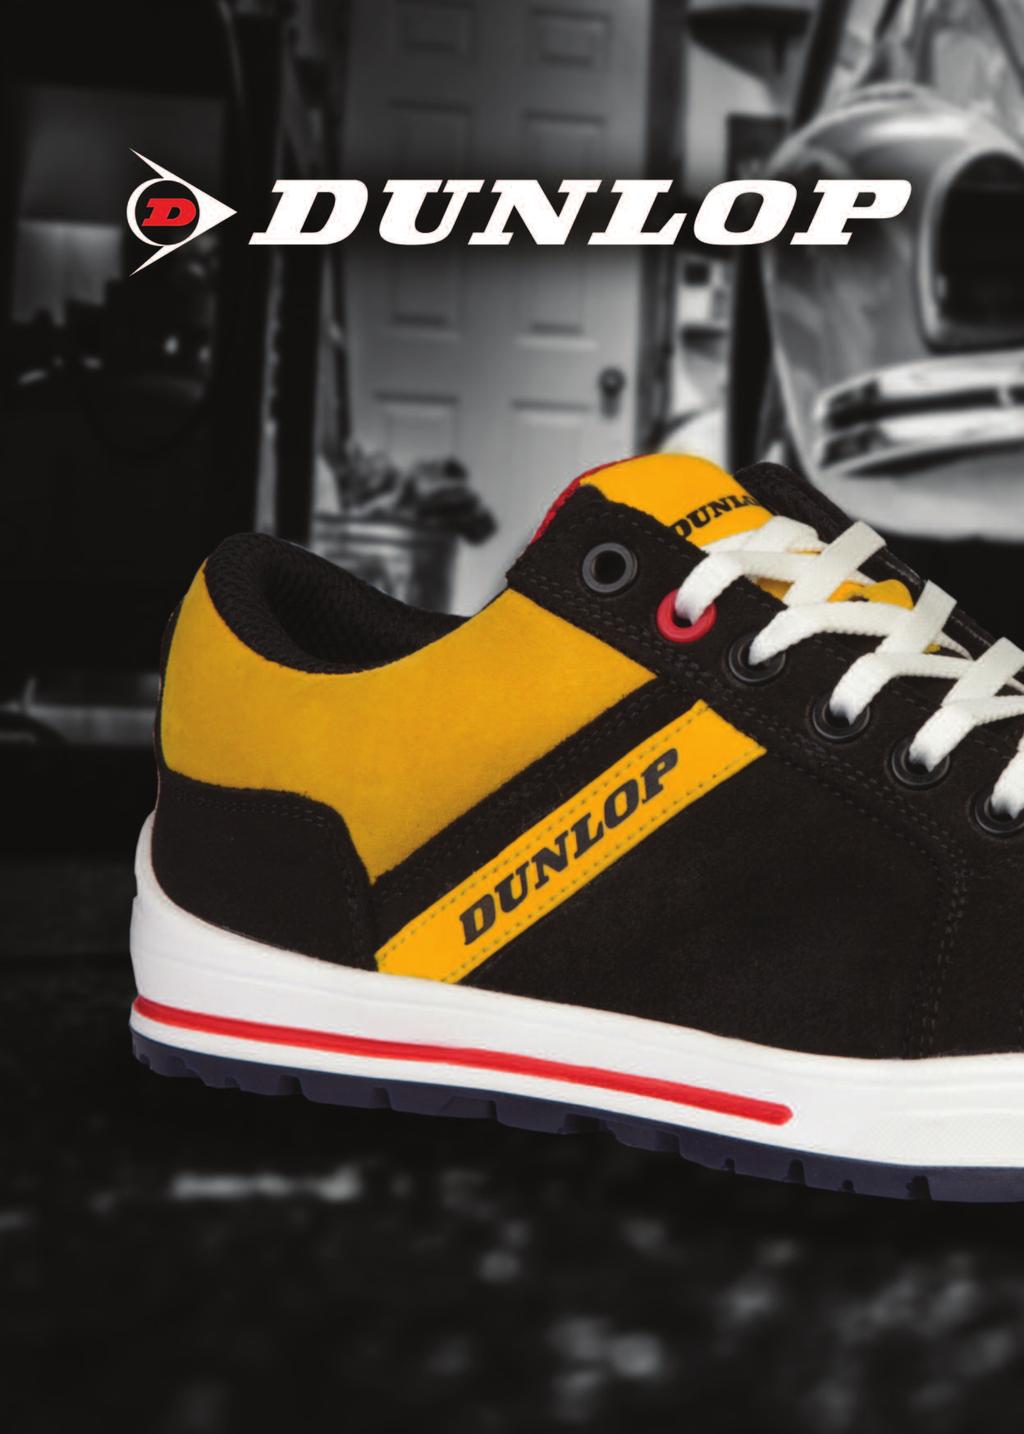 Sapatos Segurança Dunlop Online, 54% OFF | www.lasdeliciasvejer.com